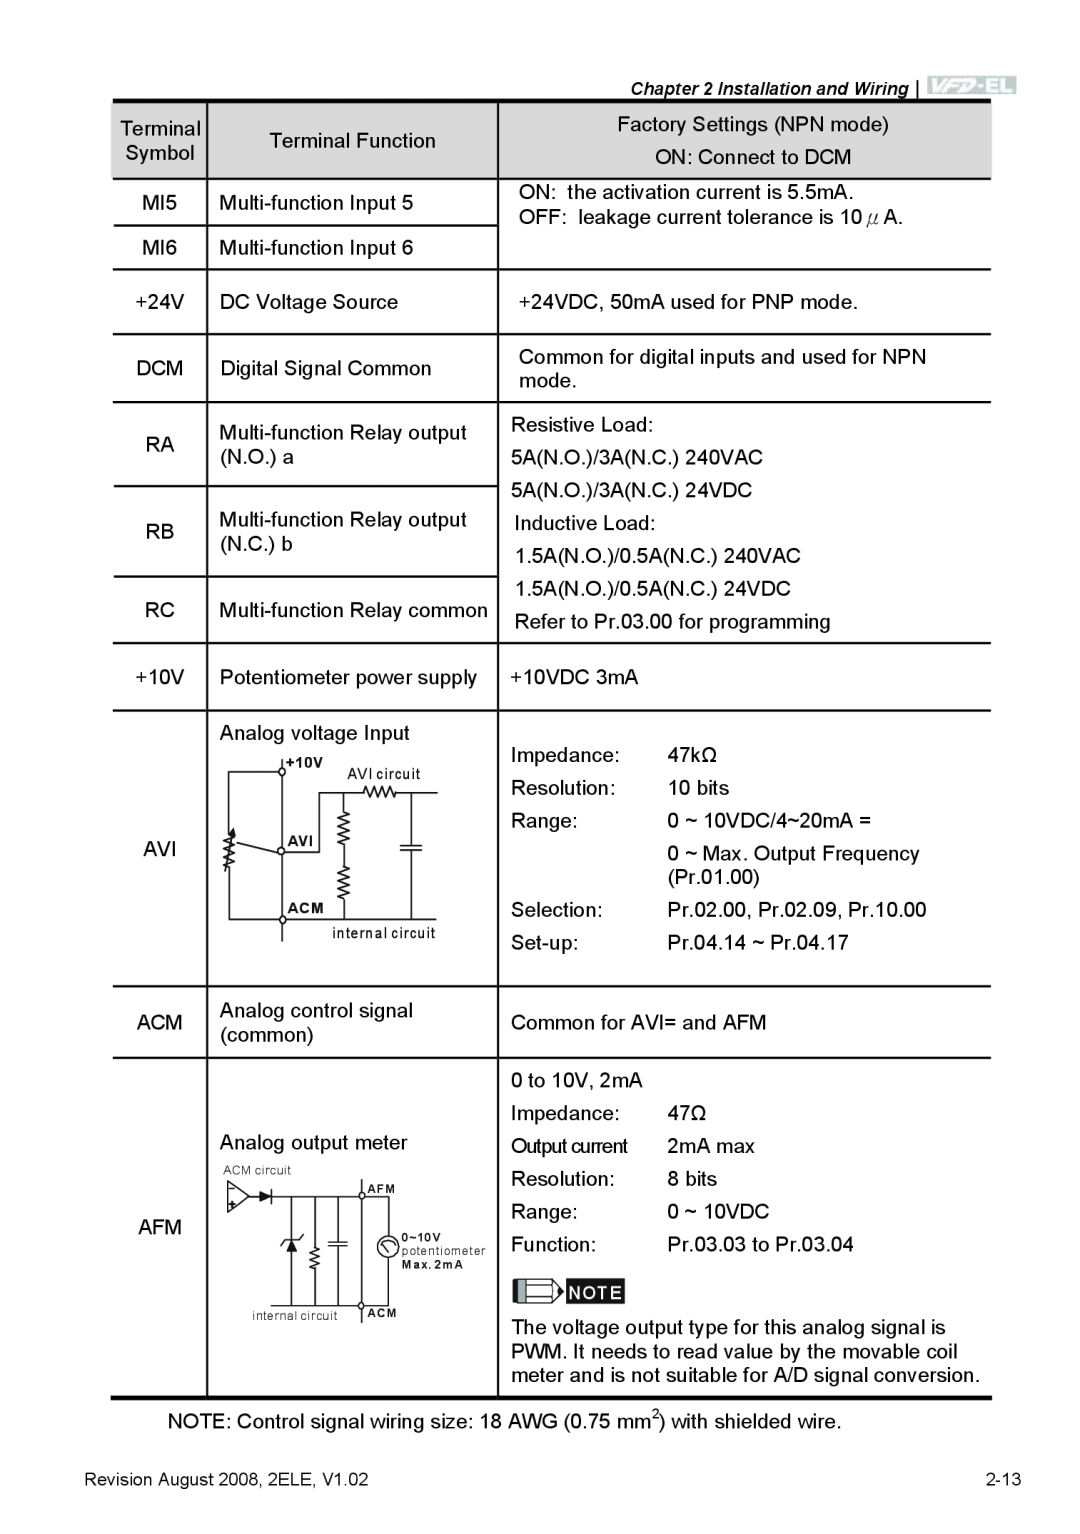 Delta Electronics VFD-EL manual +10V, internal circuit 